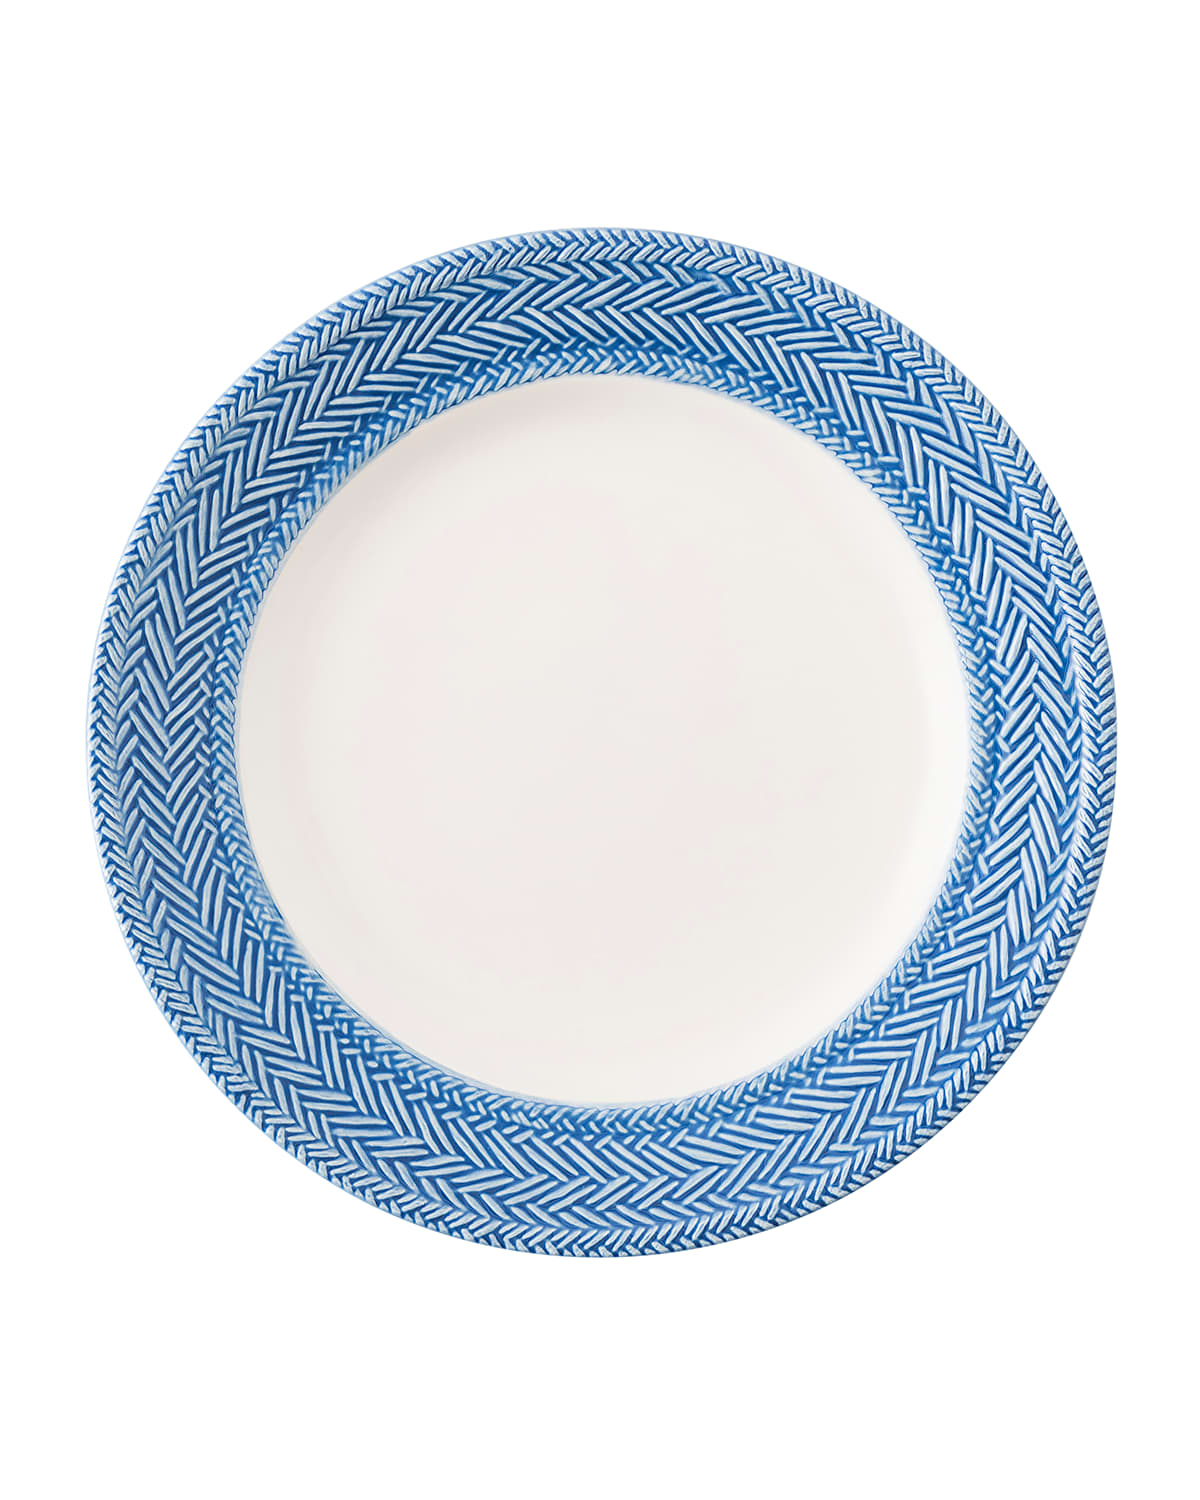 Shop Juliska Le Panier White/delft Blue Dessert/salad Plate - 9"